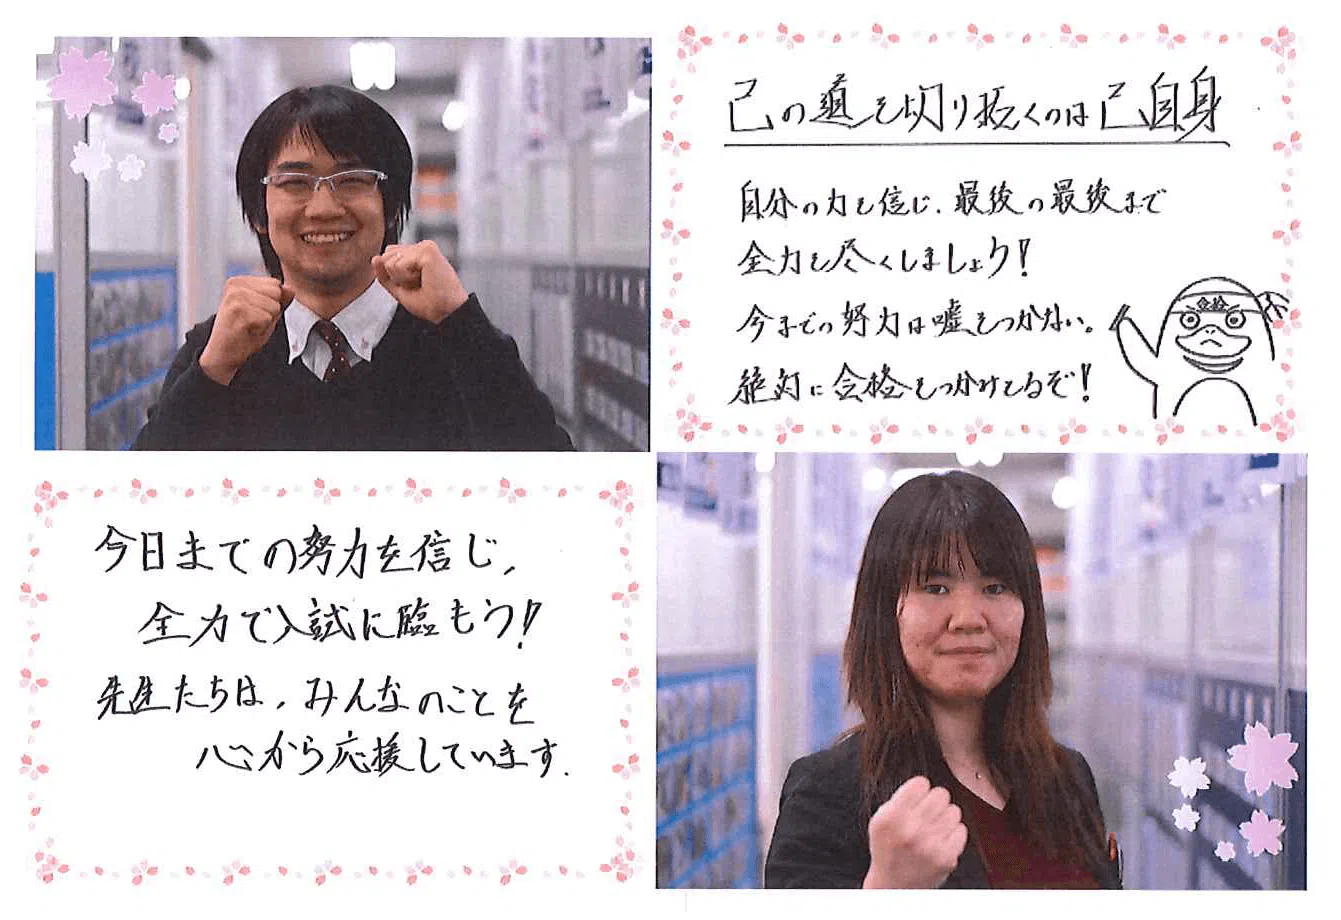 中学部講師から受験生へ応援メッセージの色紙 錦糸町